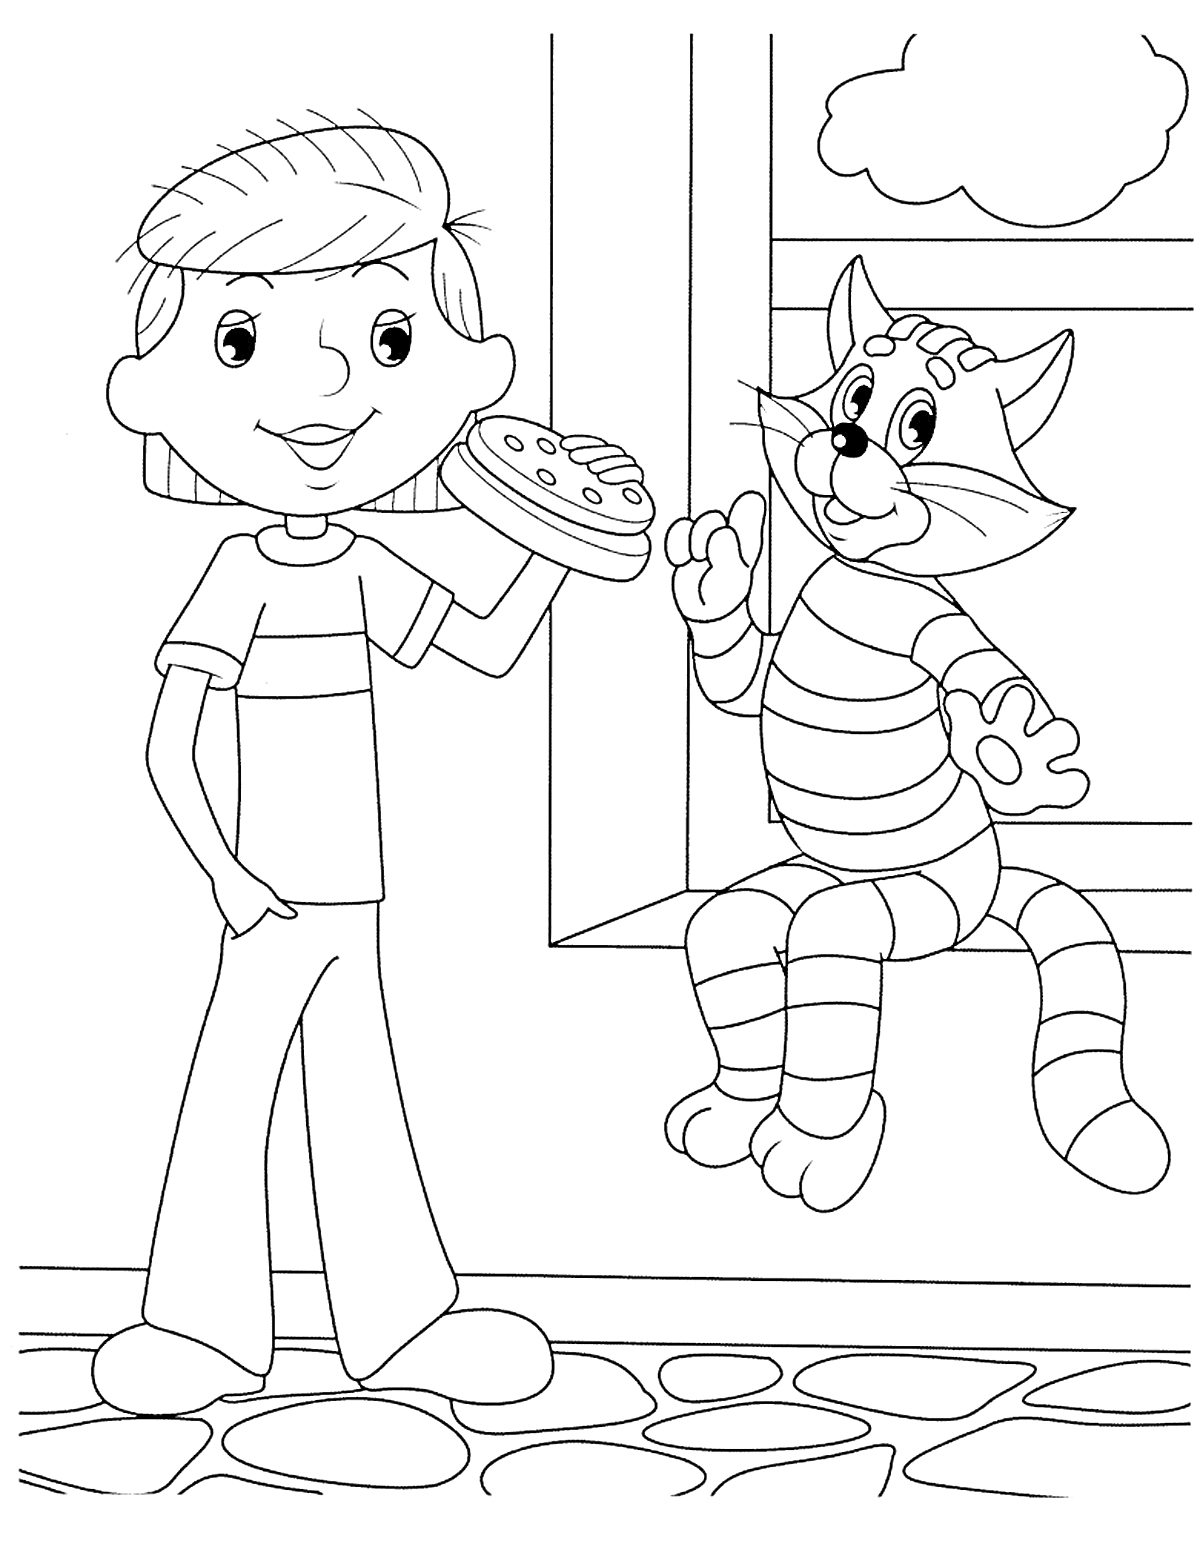 Раскраска Мальчик с пиццей держит руку с пирогом, рядом с ним сидящий на подоконнике полосатый кот под окном